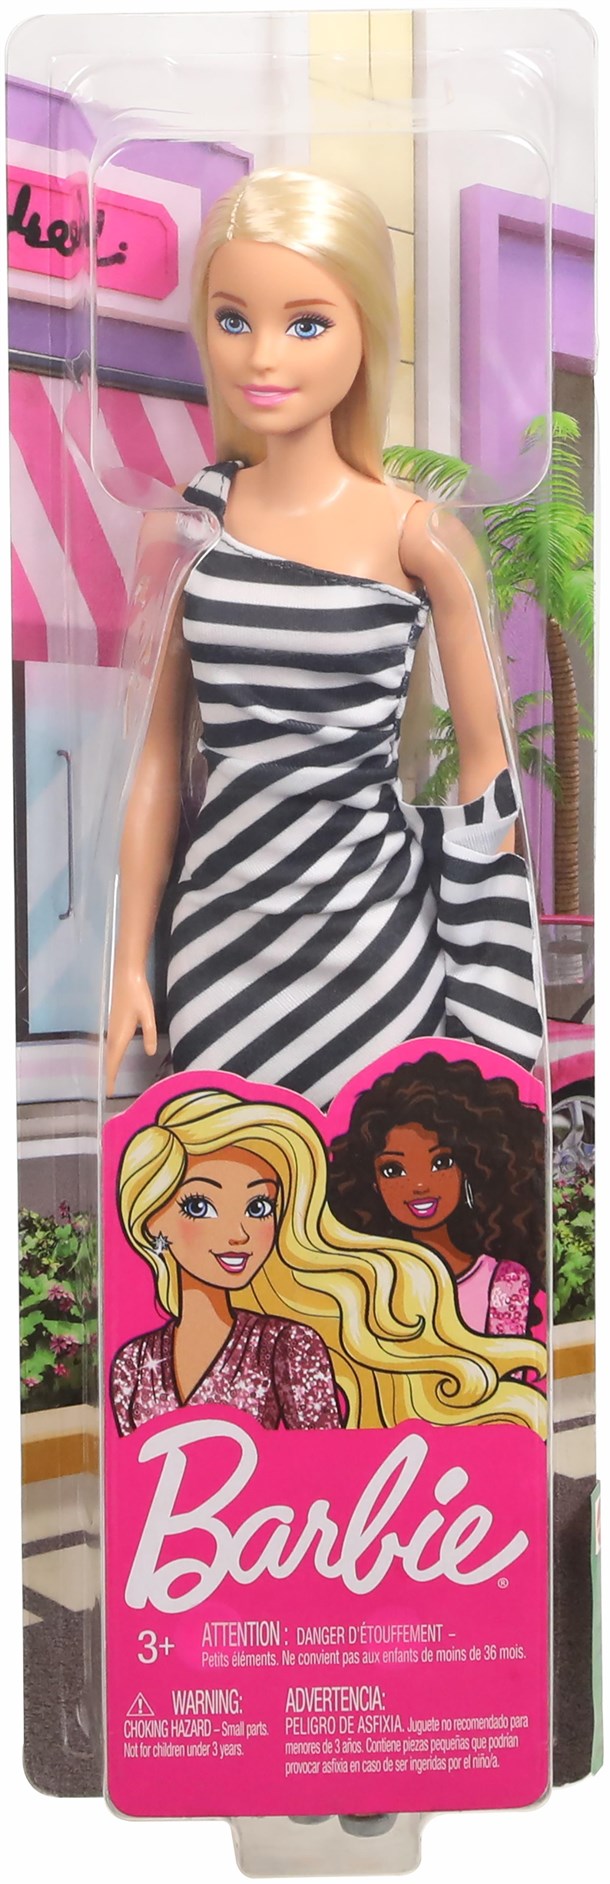 Tela para pintura de 15x20 cm, Barbie com глиттером e pedrinhas, em плёнке